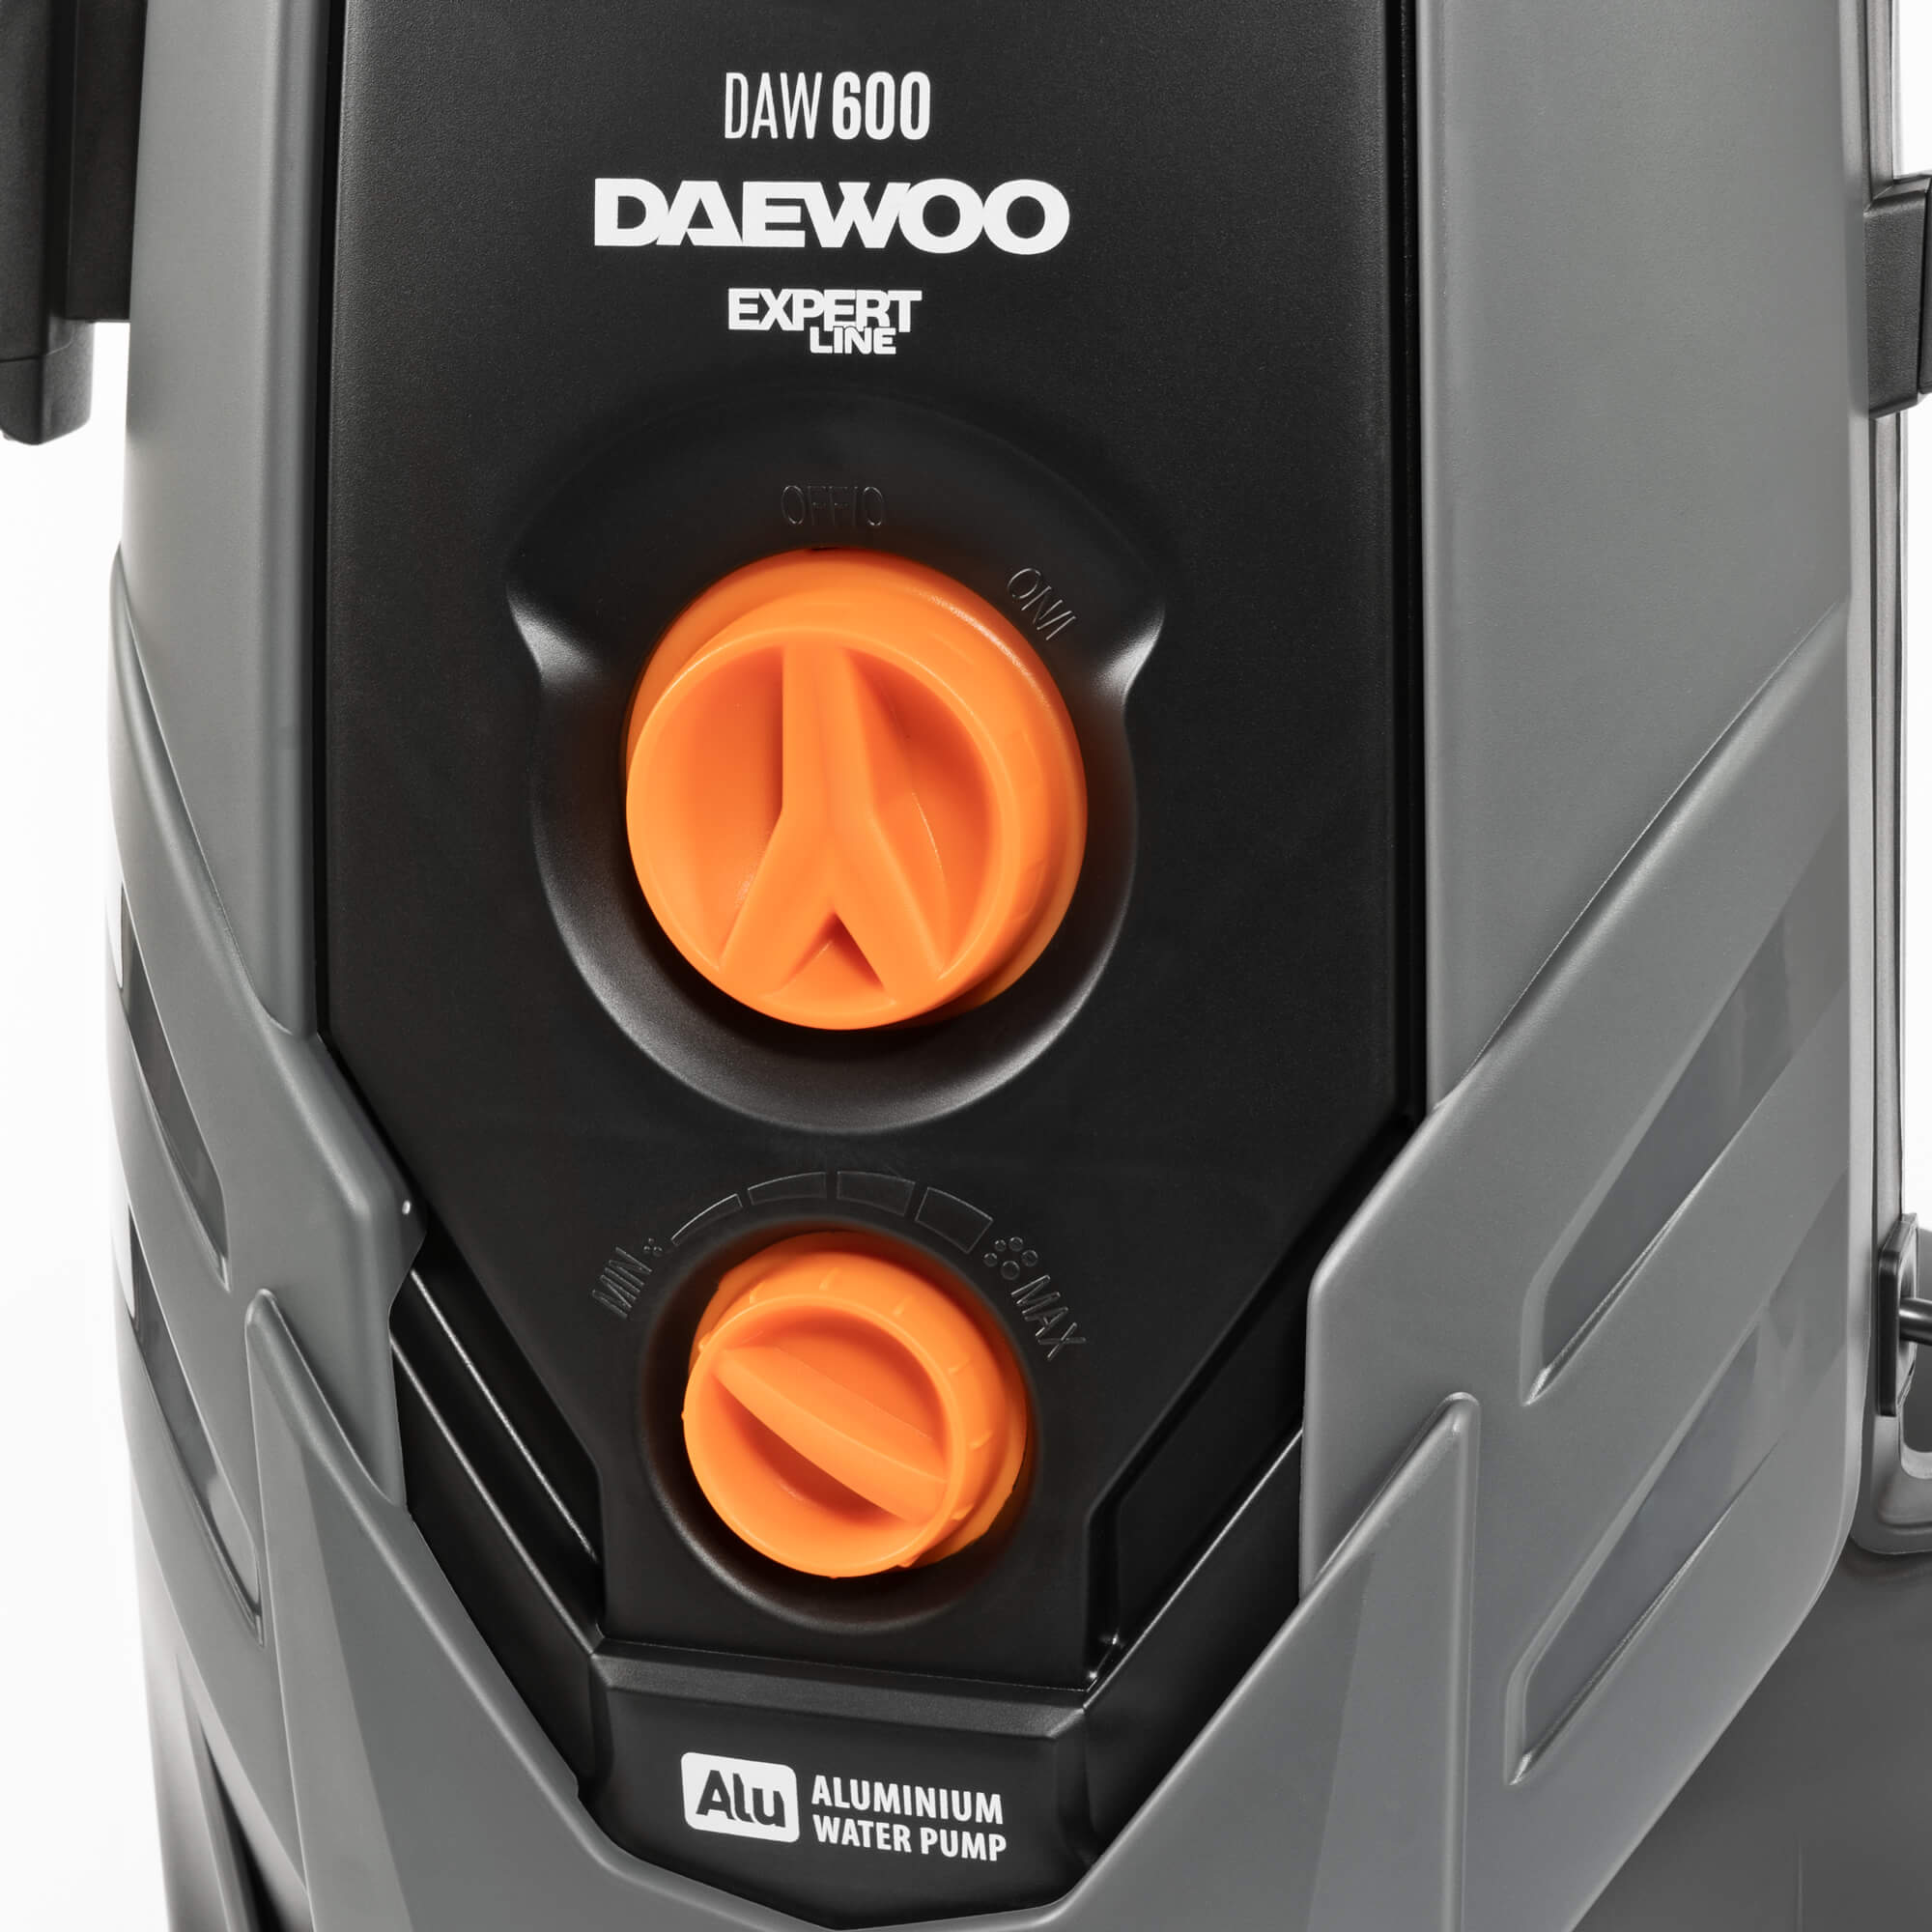 Мойка daewoo купить. Daewoo daw600. Мойка высокого давления Дэу 600. Daewoo daw600 Expert мойка высокого давления. Мойка высокого давления Daewoo DAW 700.